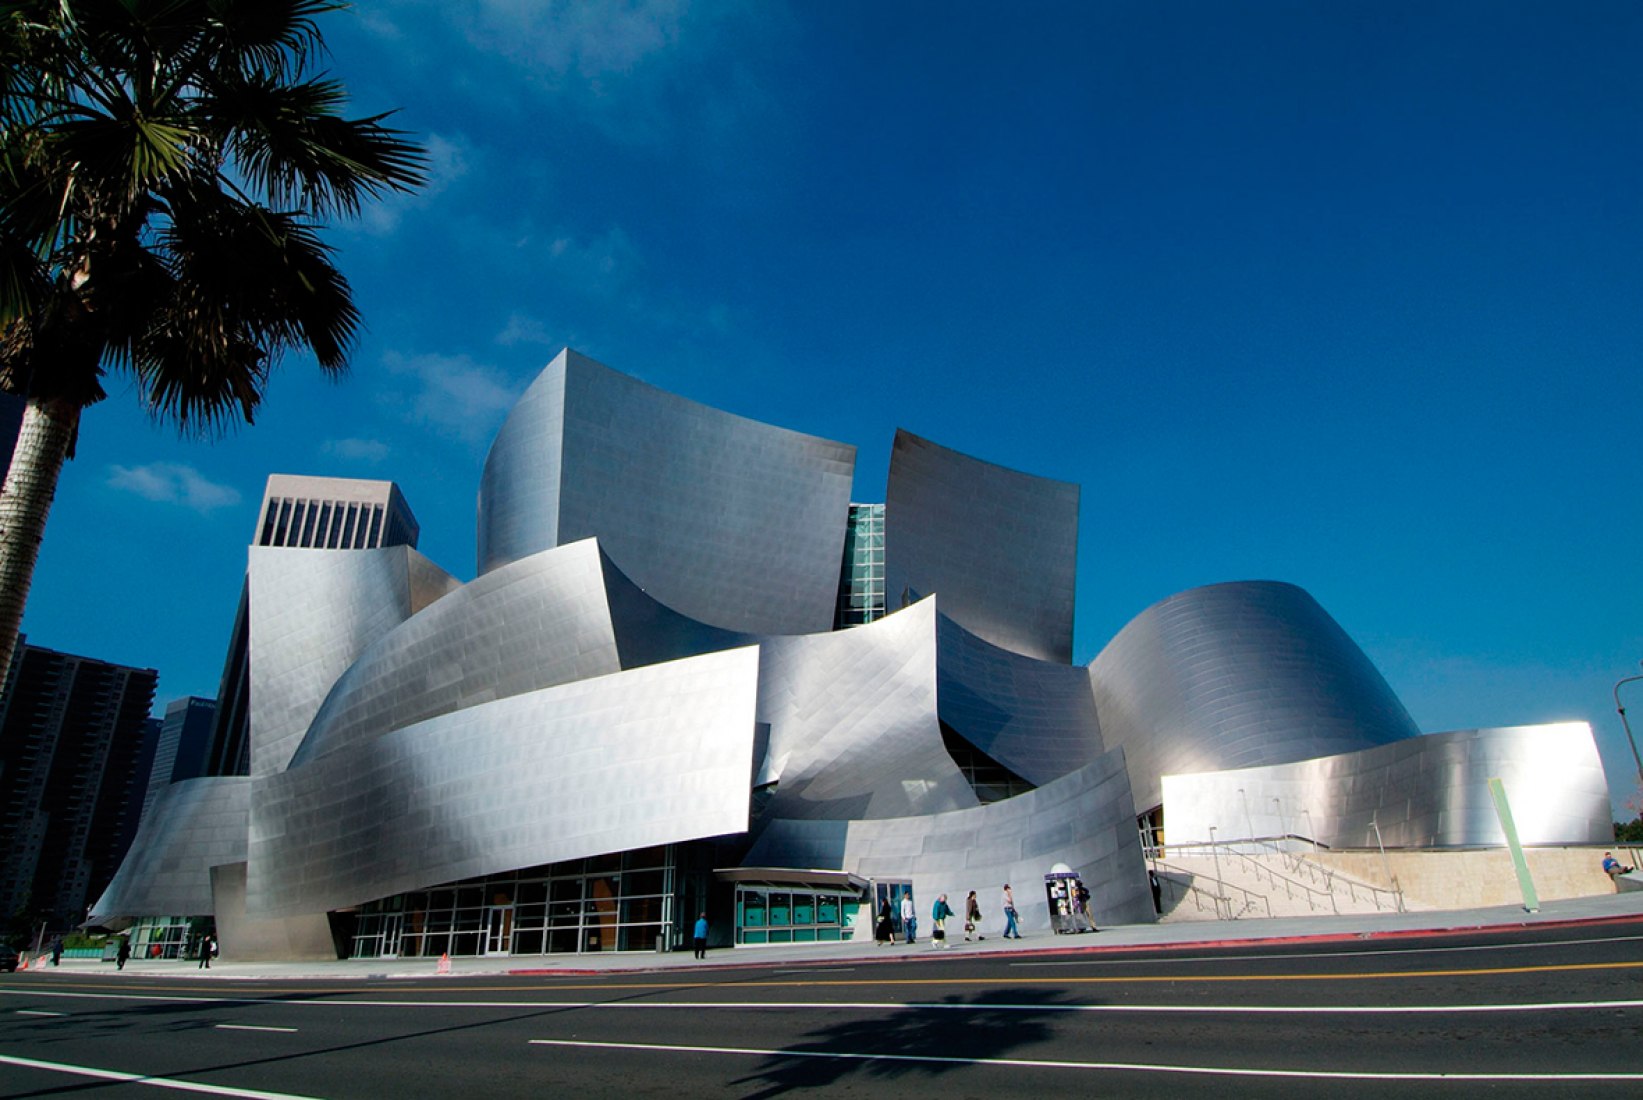 Зал уолта диснея. Лос Анджелес концертный зал Уолта Диснея. Фрэнк Гери концертный зал Уолта Диснея. Концертный зал Фрэнк Гери Лос Анджелес. Концертного зала Уолта Диснея в Лос-Анджелесе.